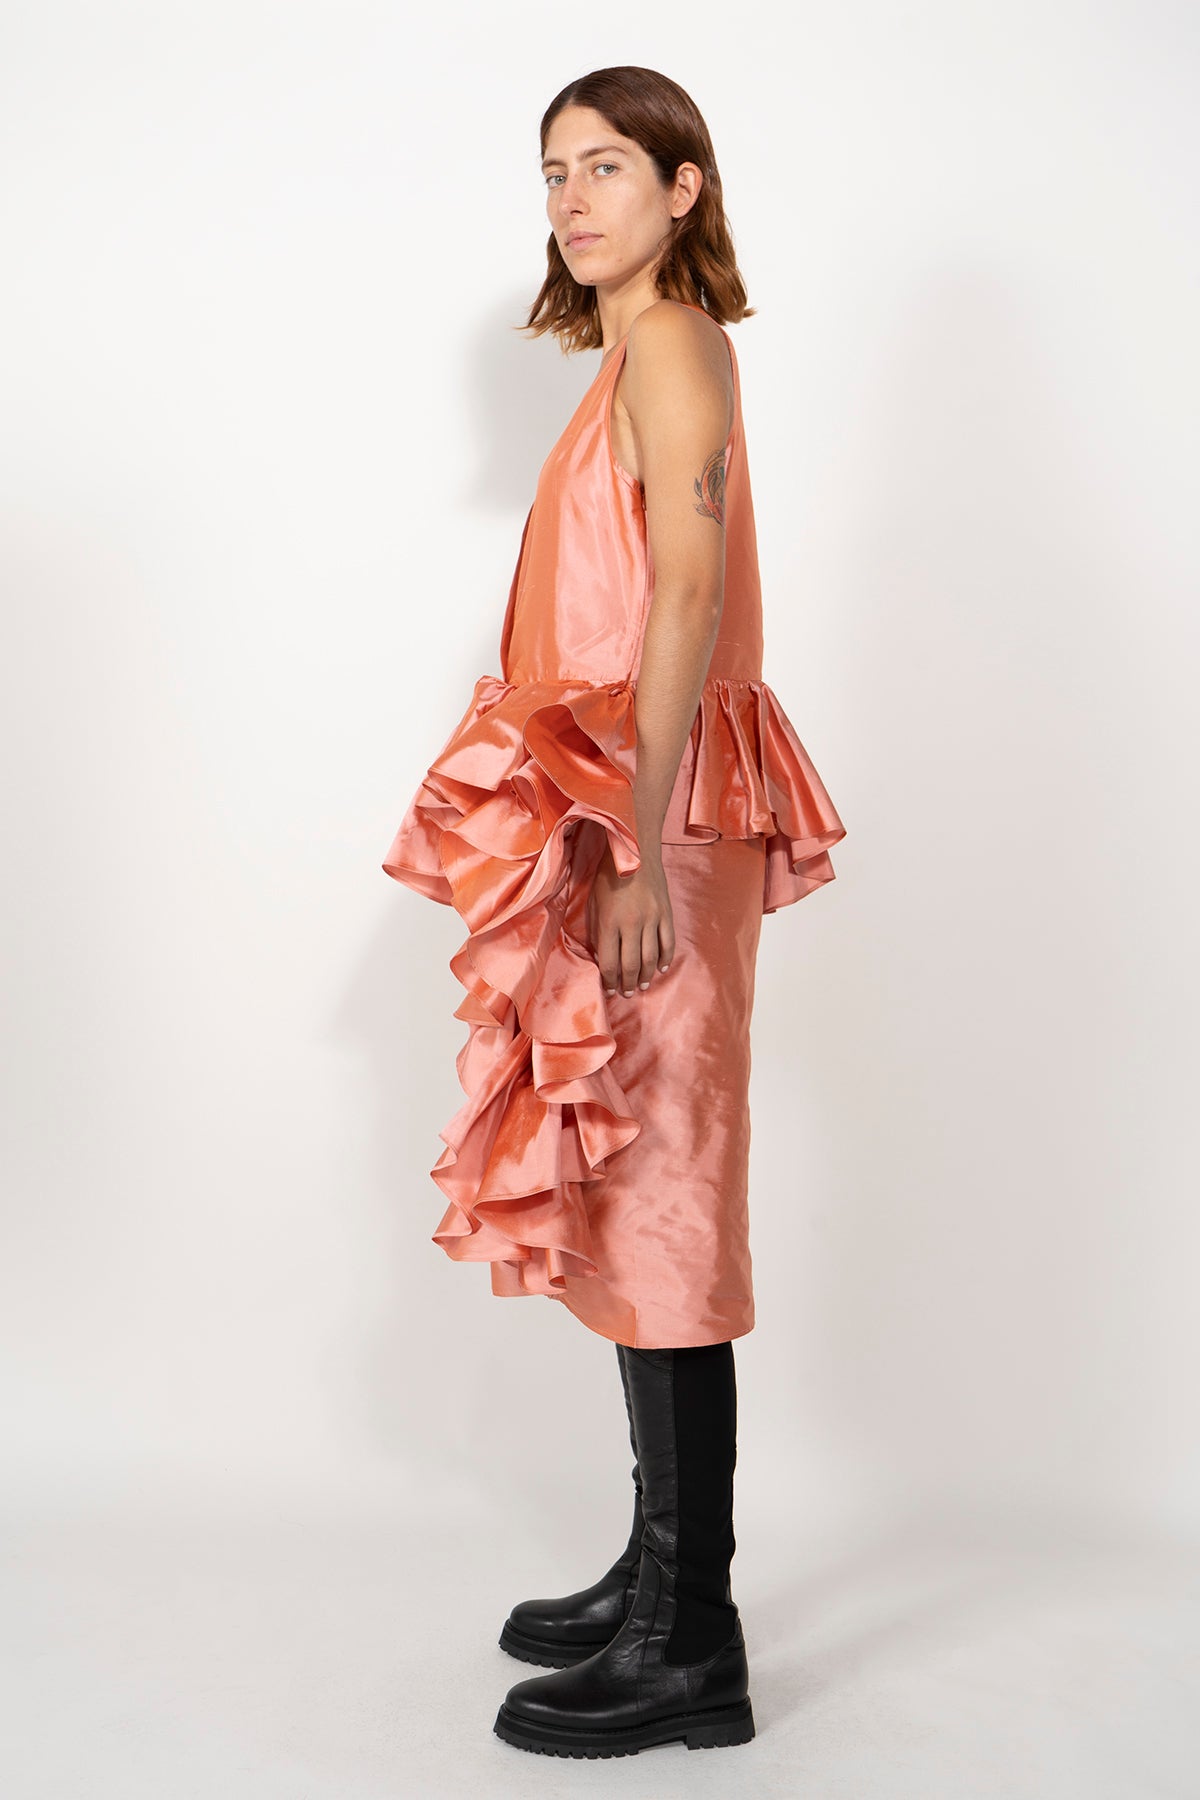 Dresses | Marques ' Almeida ® Official Site